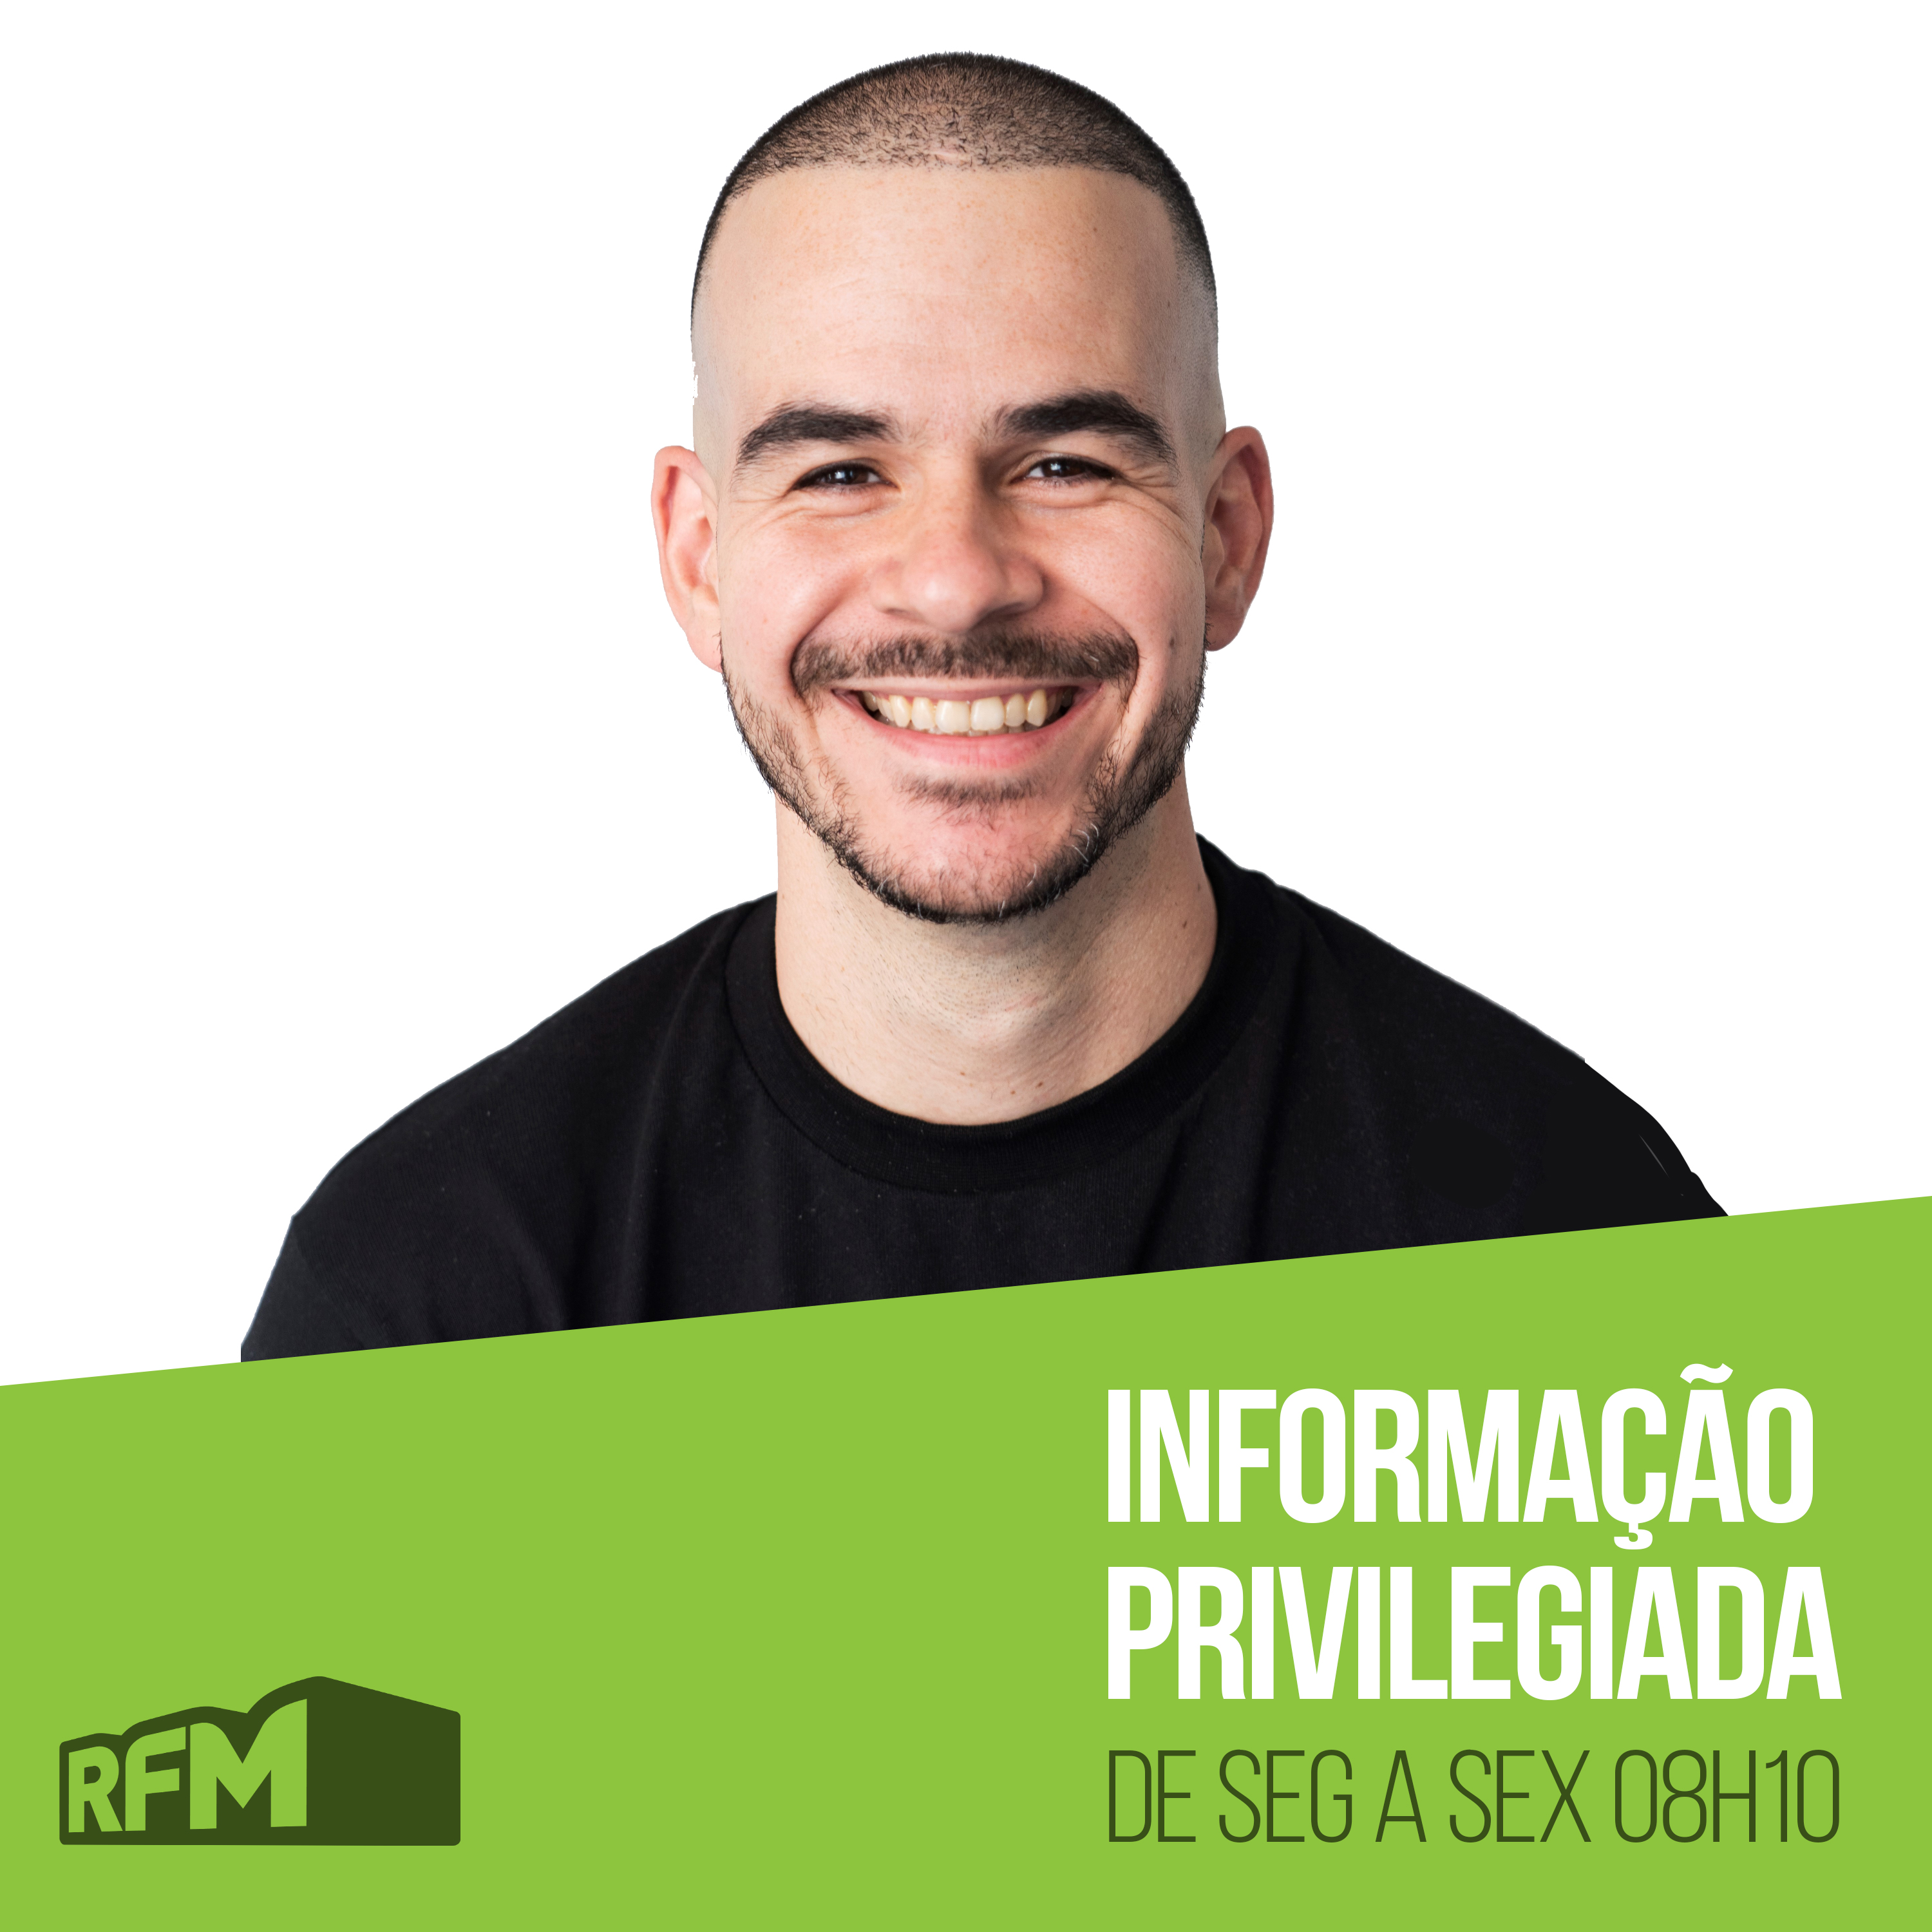 RFM - INFORMAÇÃO PRIVILEGIADA: A MULHER INVISÍVEL DO DUARTE PITA NEGRÃO